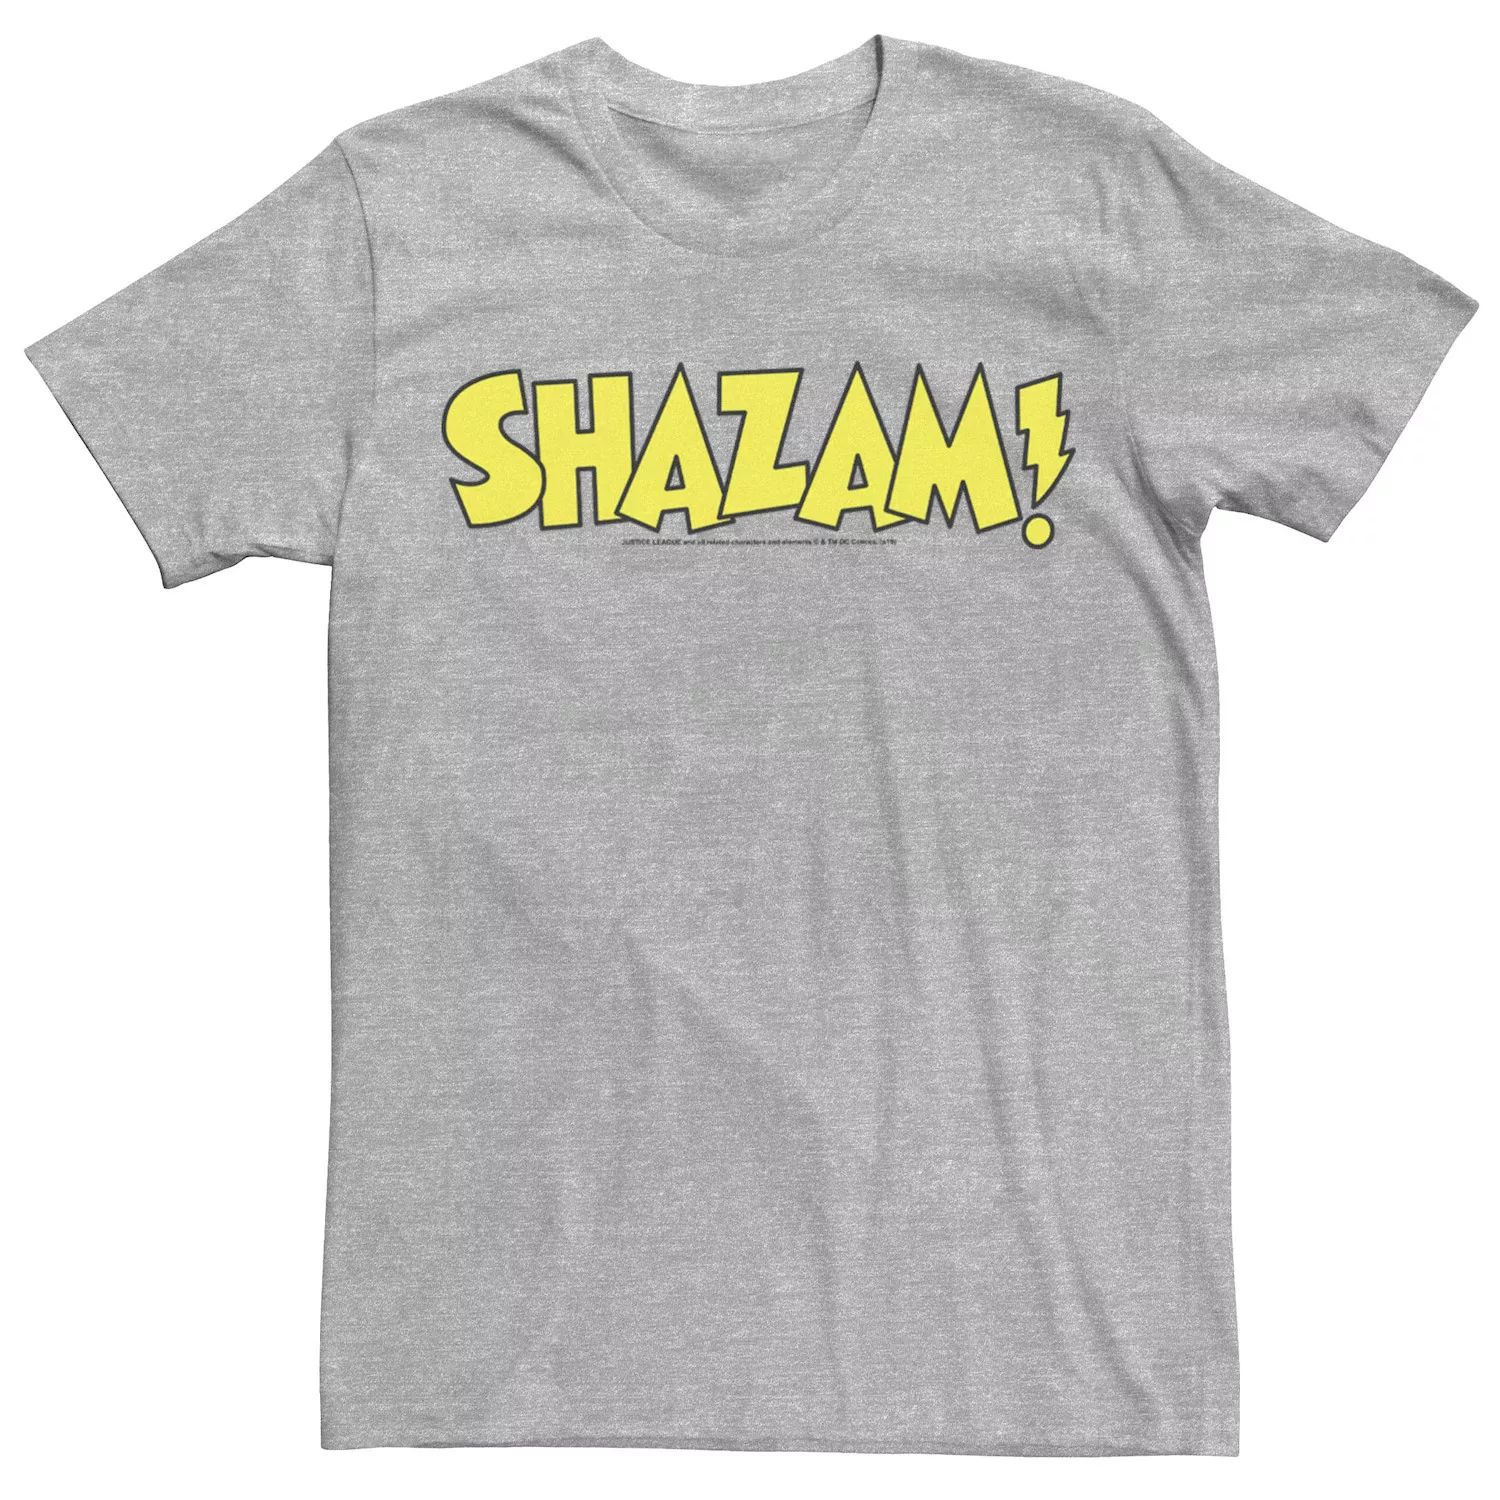 цена Мужская футболка с жирным текстовым логотипом Shazam DC Comics